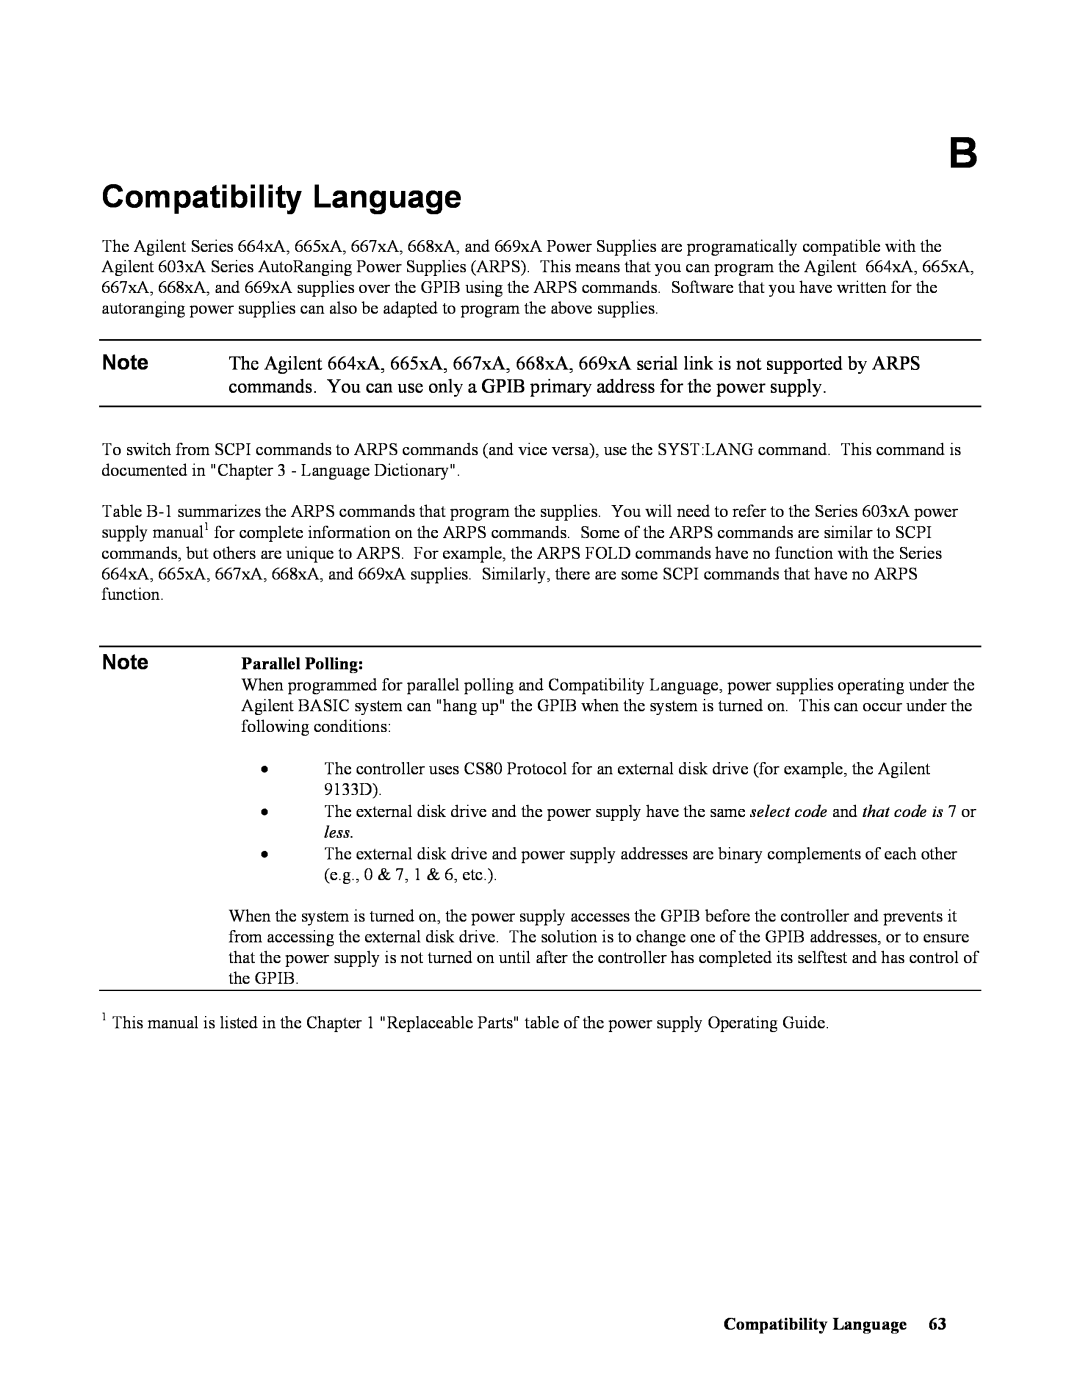 Agilent Technologies 665xA, 664xA, 667xA, 669xA, 668xA manual Compatibility Language 